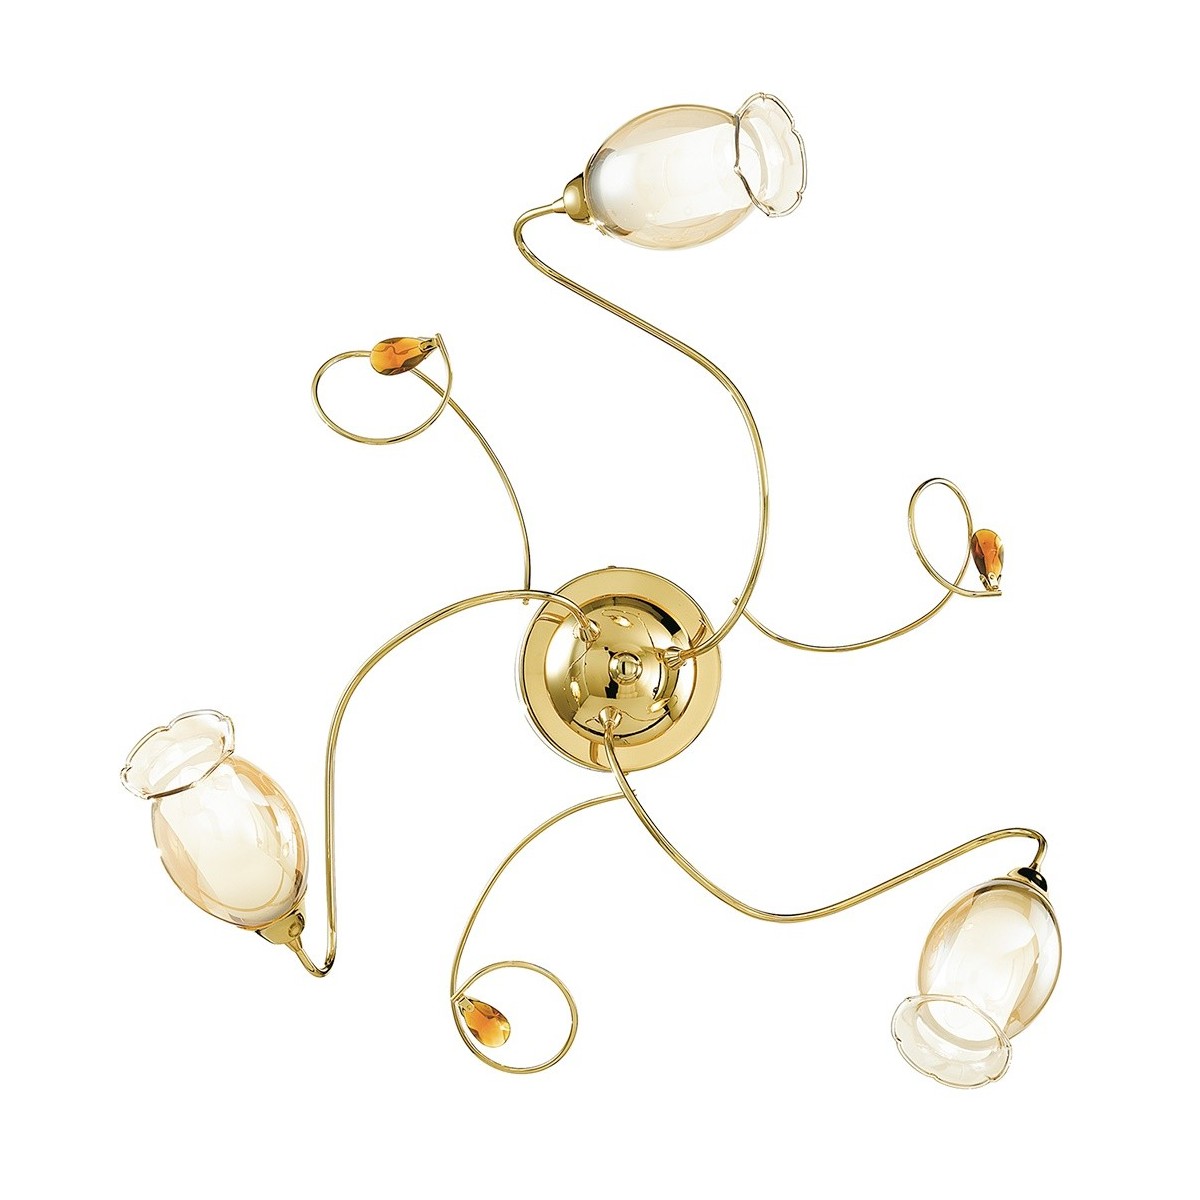 I-ELY / PL3 GOLD - Plafonnier en or avec diffuseurs floraux et décoration en cristal K9 Plafonnier Classic E14